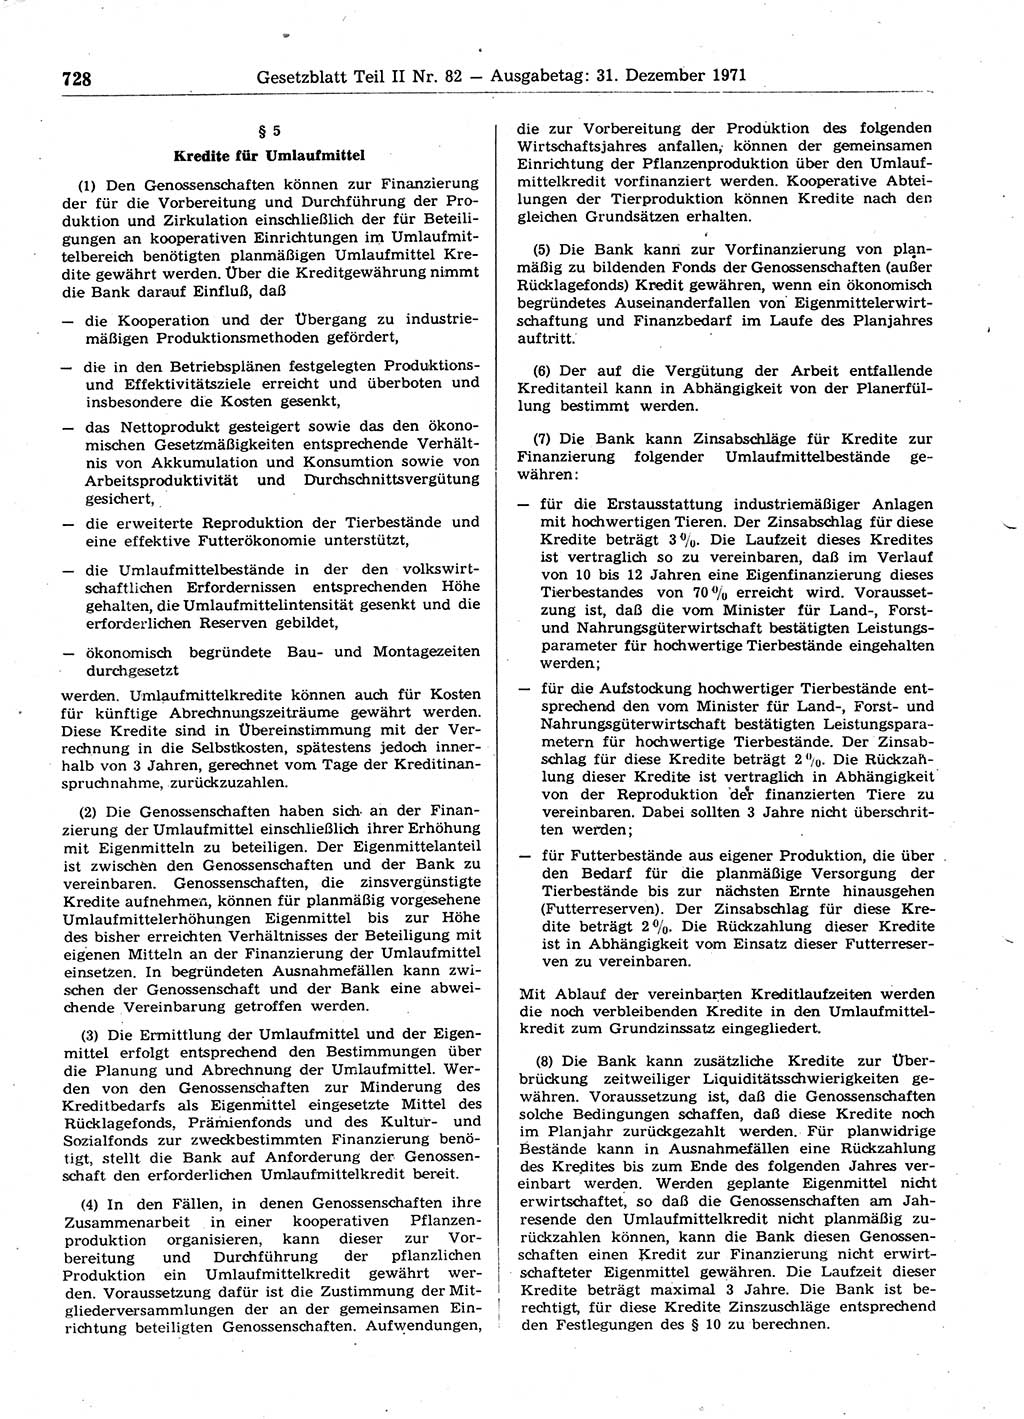 Gesetzblatt (GBl.) der Deutschen Demokratischen Republik (DDR) Teil ⅠⅠ 1971, Seite 728 (GBl. DDR ⅠⅠ 1971, S. 728)